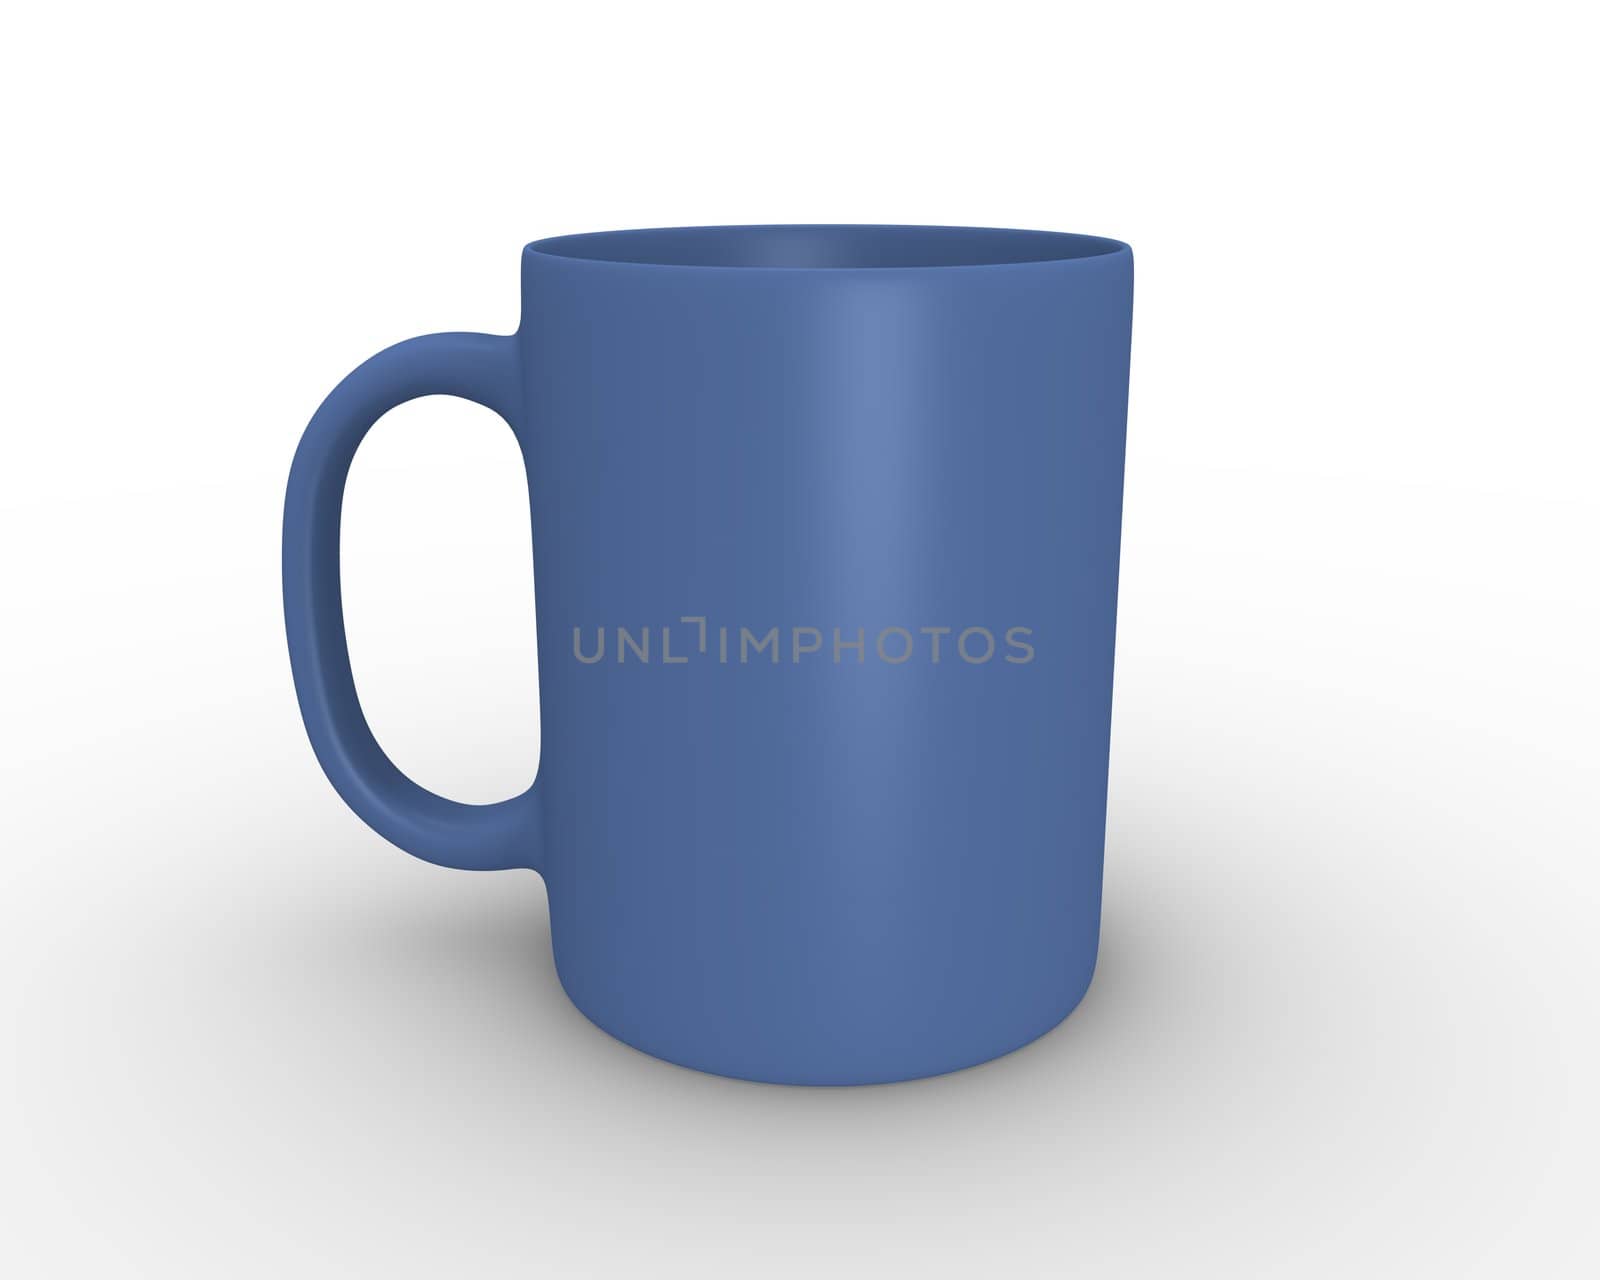 3D rendered illustration of blue tea/coffee mug
